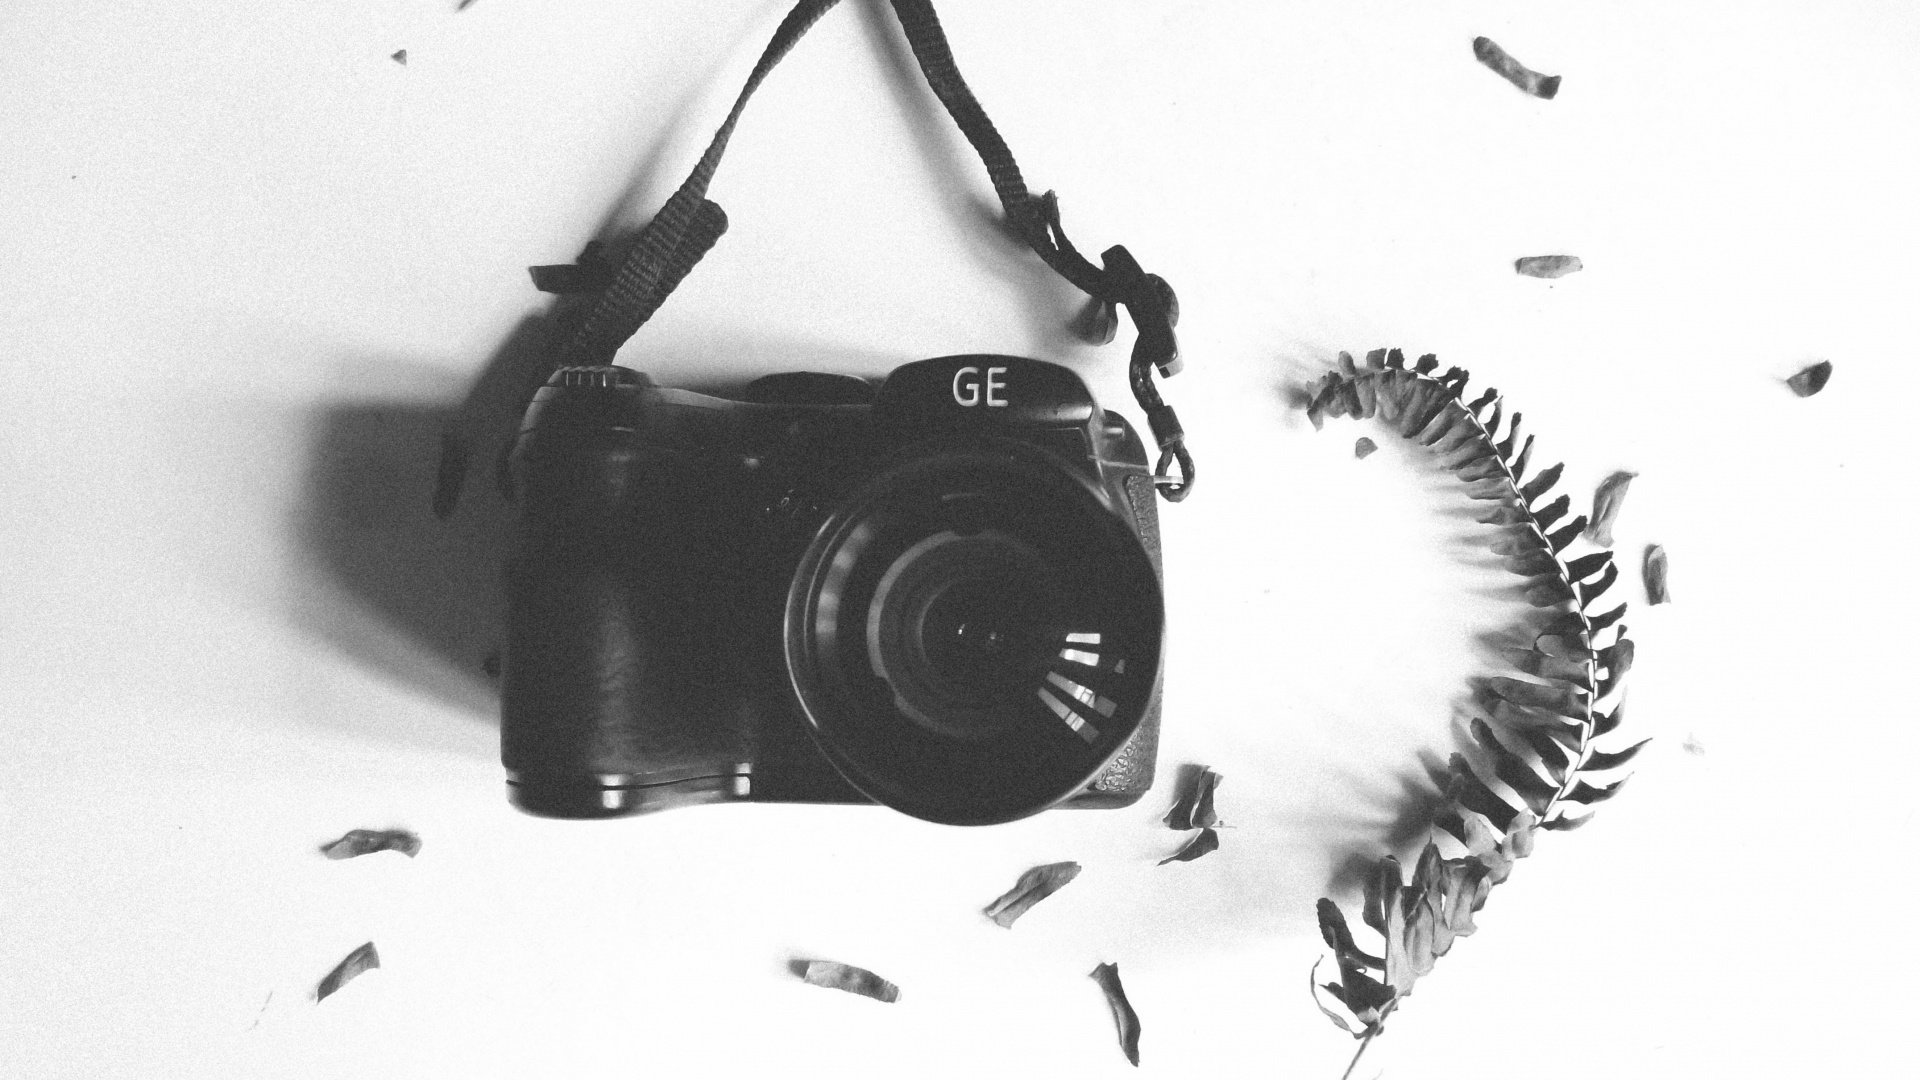 Appareil Photo Reflex Numérique Nikon Noir Sur Textile Blanc. Wallpaper in 1920x1080 Resolution